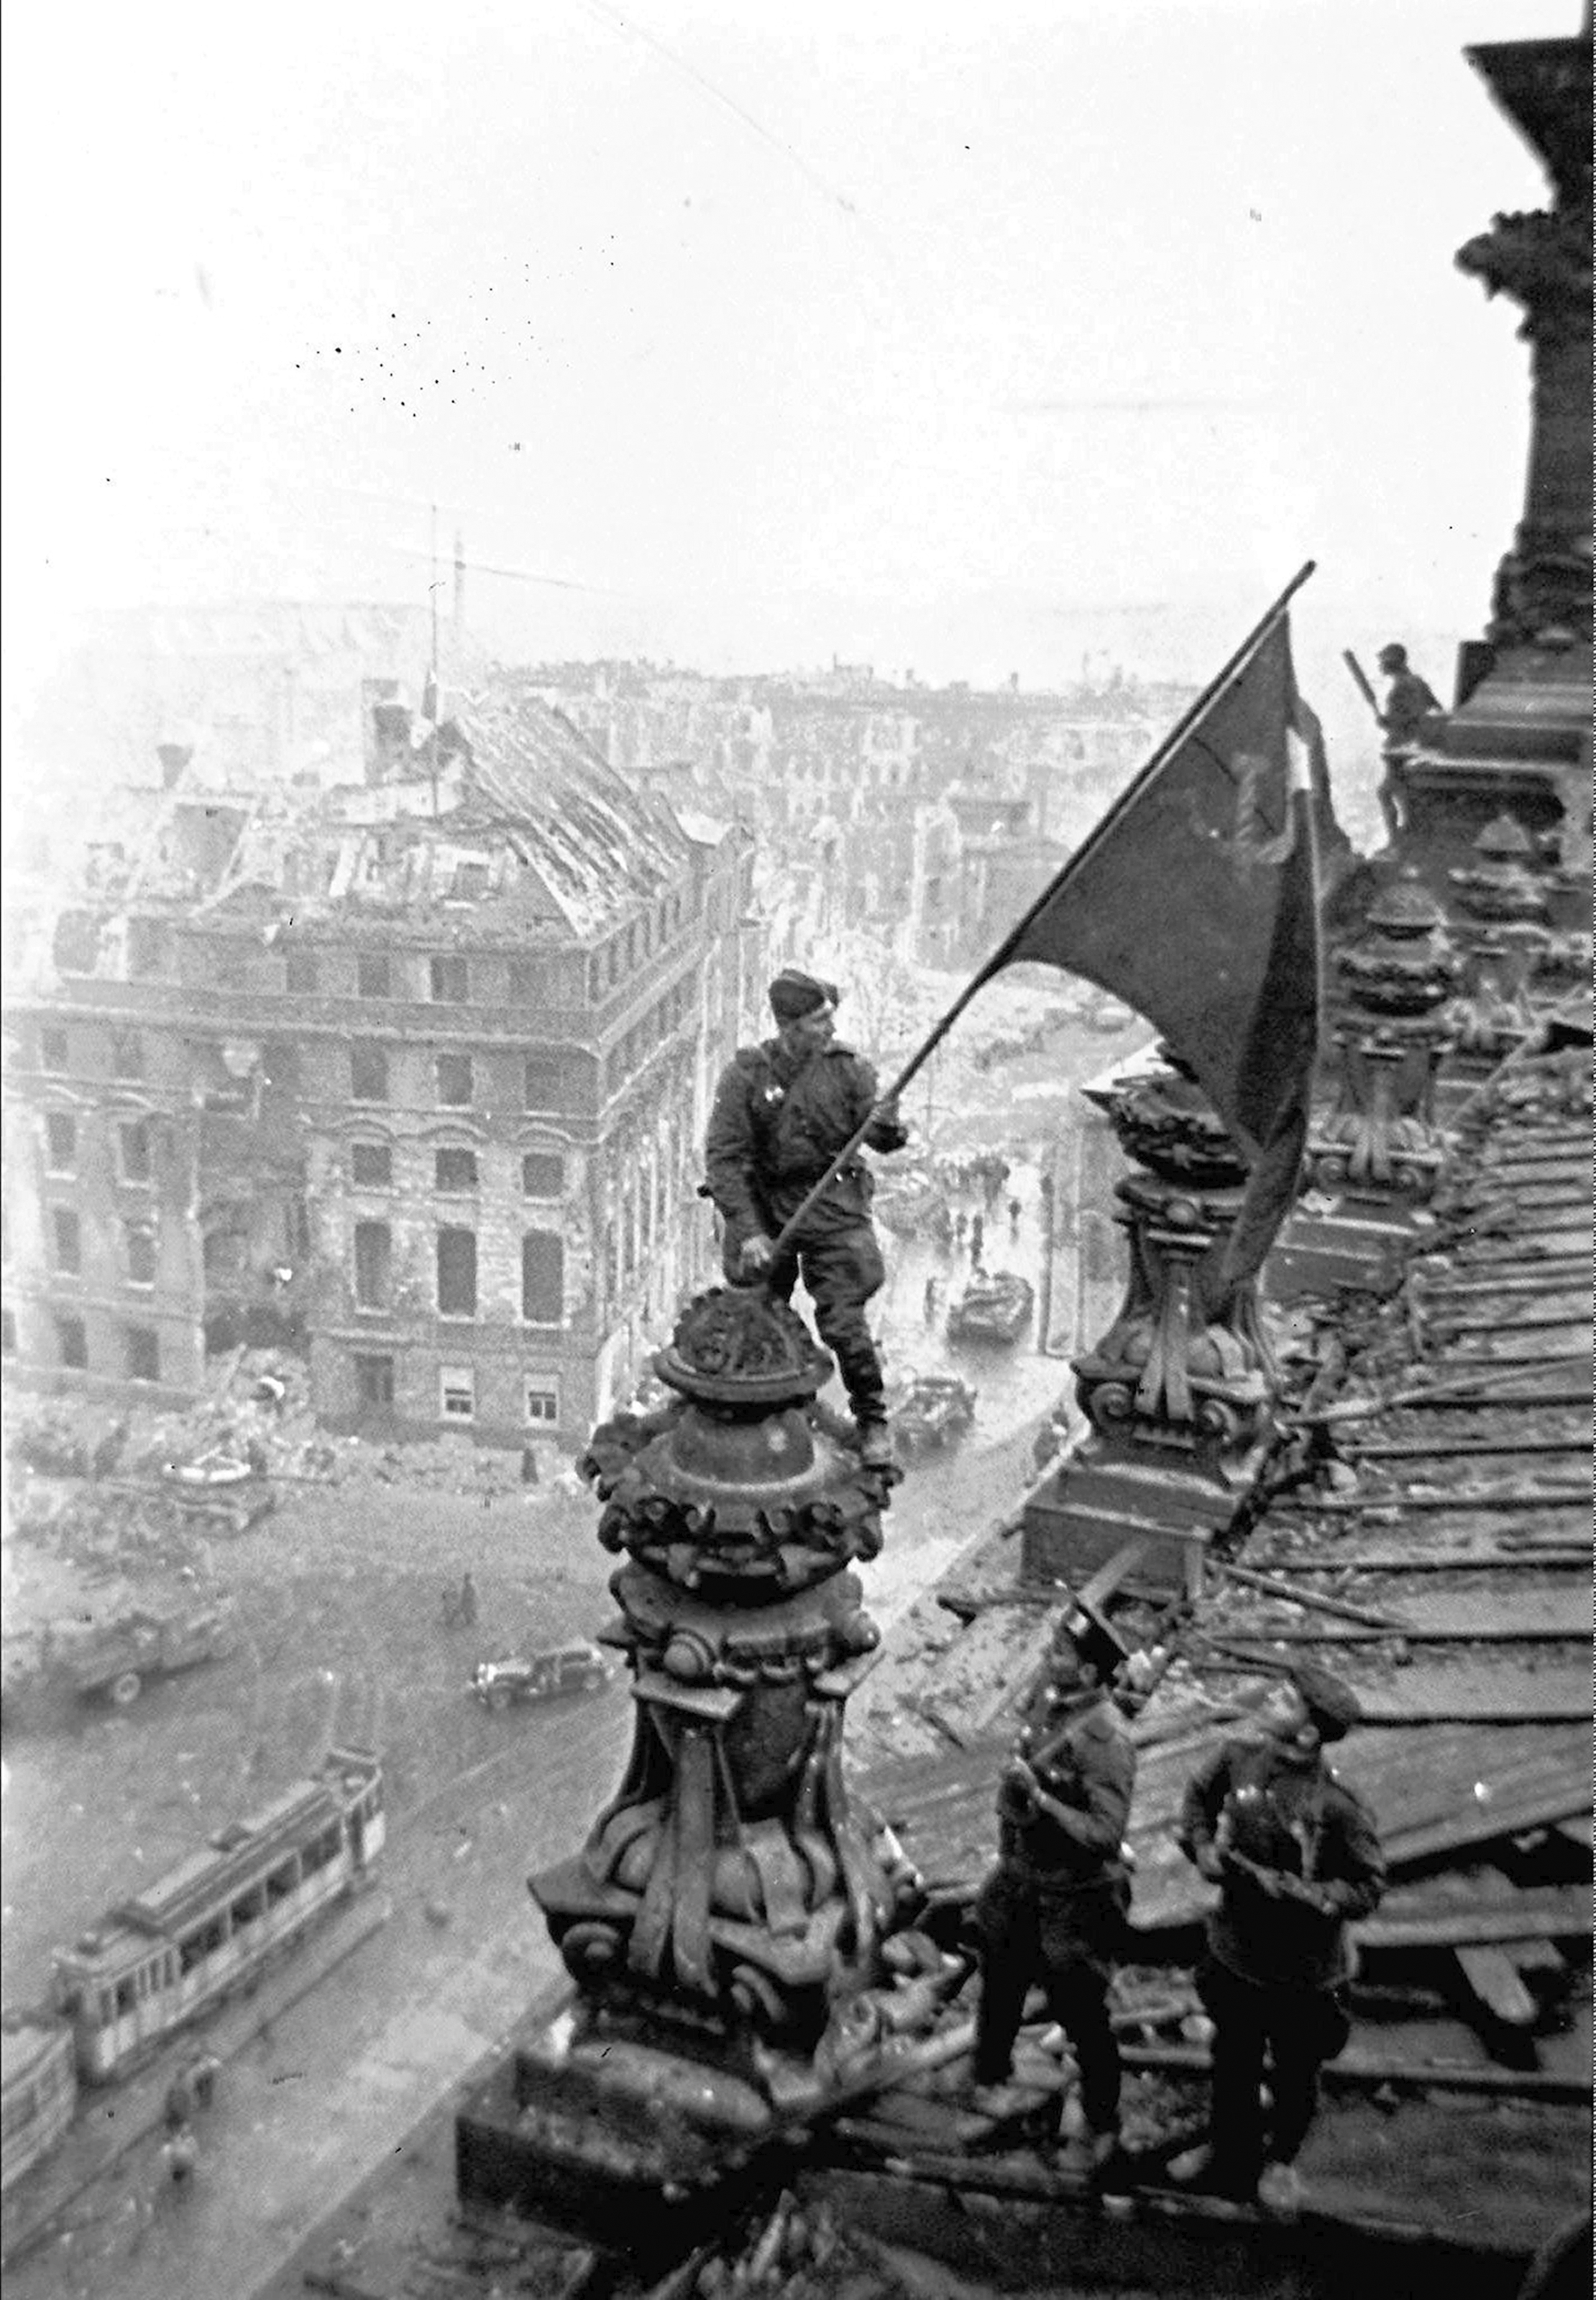 ARCHIVO - Los soldados soviéticos izan la bandera roja sobre el Reichstag en Berlín, Alemania, en mayo de 1945. La foto fue tomada por Yevgeny Khaldei, un fotógrafo veterano cuyas fotografías de soldados soviéticos izando la bandera roja sobre el Reichstag en Berlín se encuentran entre las más conocidas. 
